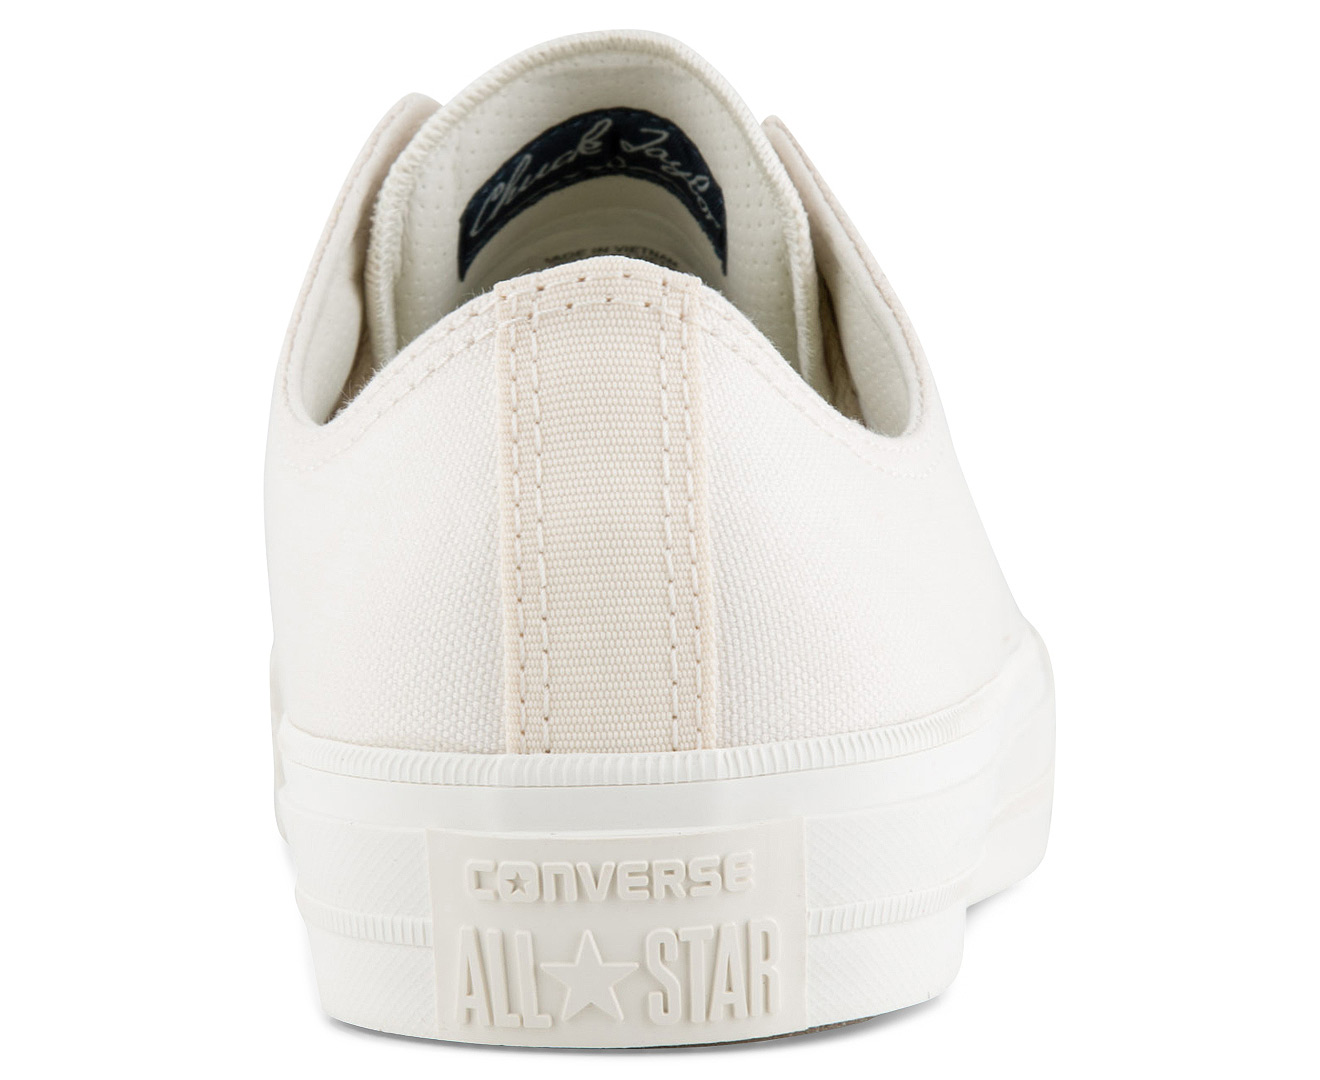 Converse Chuck Taylor All Star II Ox Canvas Shoe - Parchment | Catch.com.au